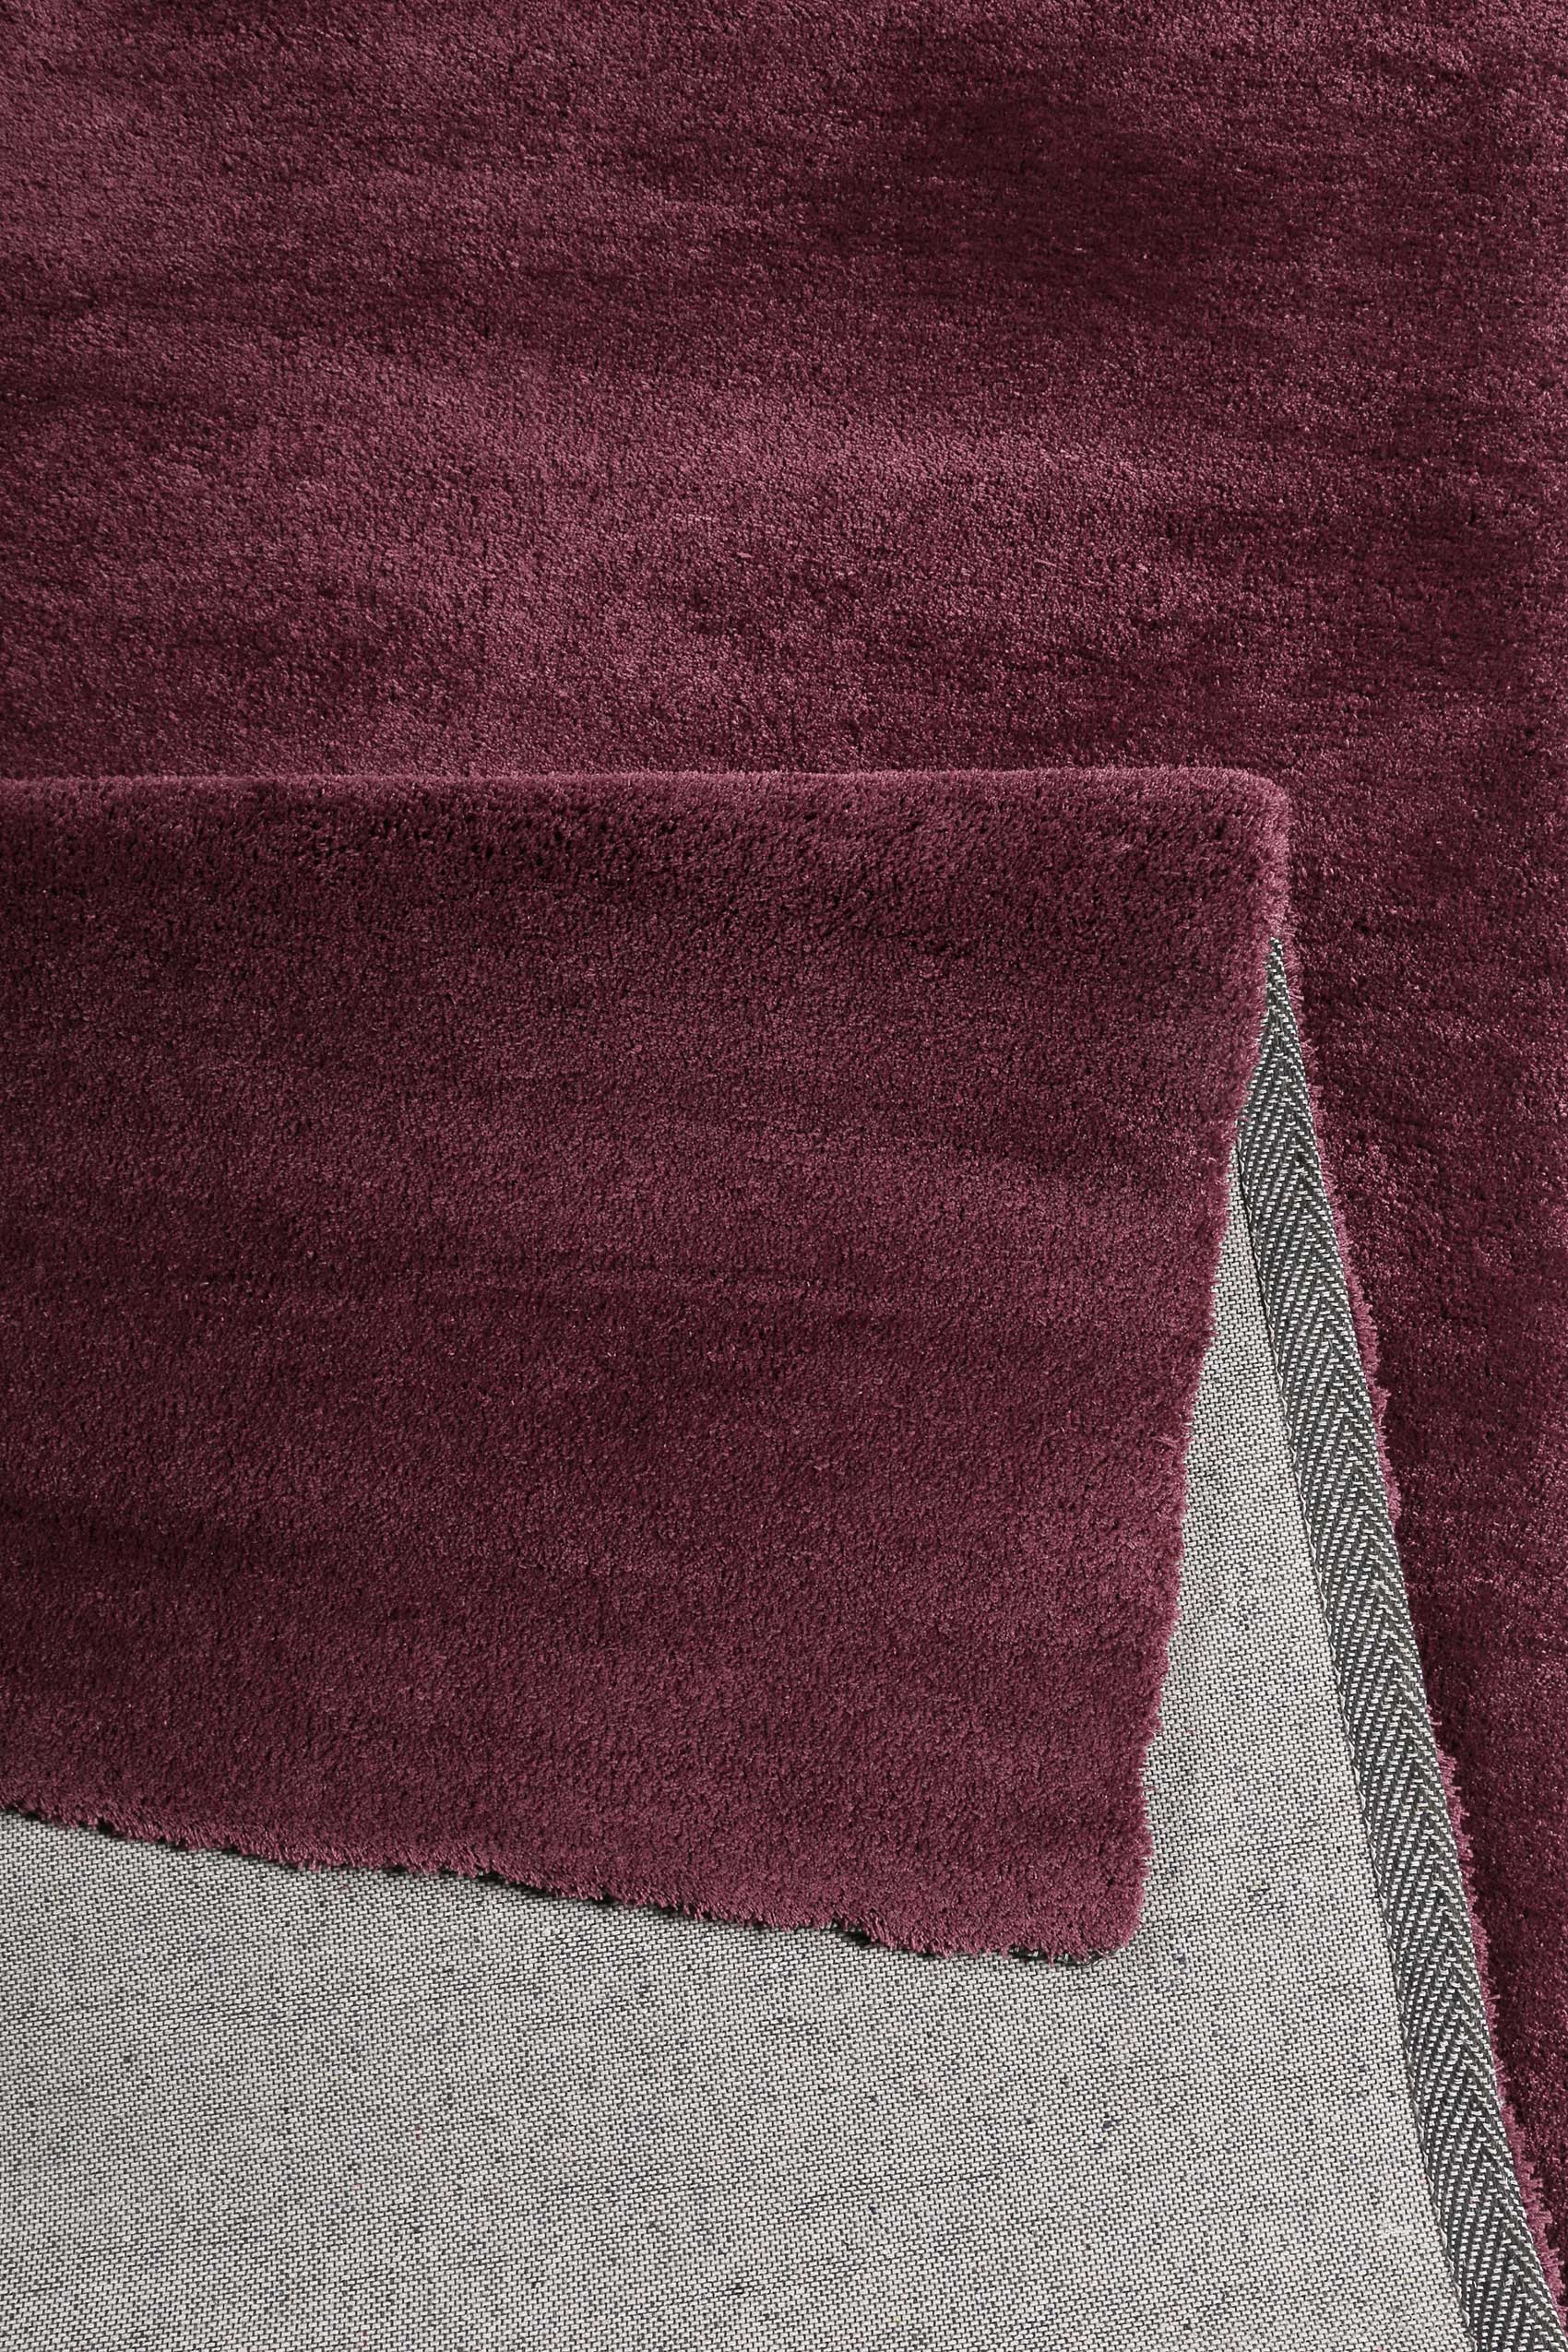 Esprit Teppich Bordeaux Hochflor » Loft « - Ansicht 3